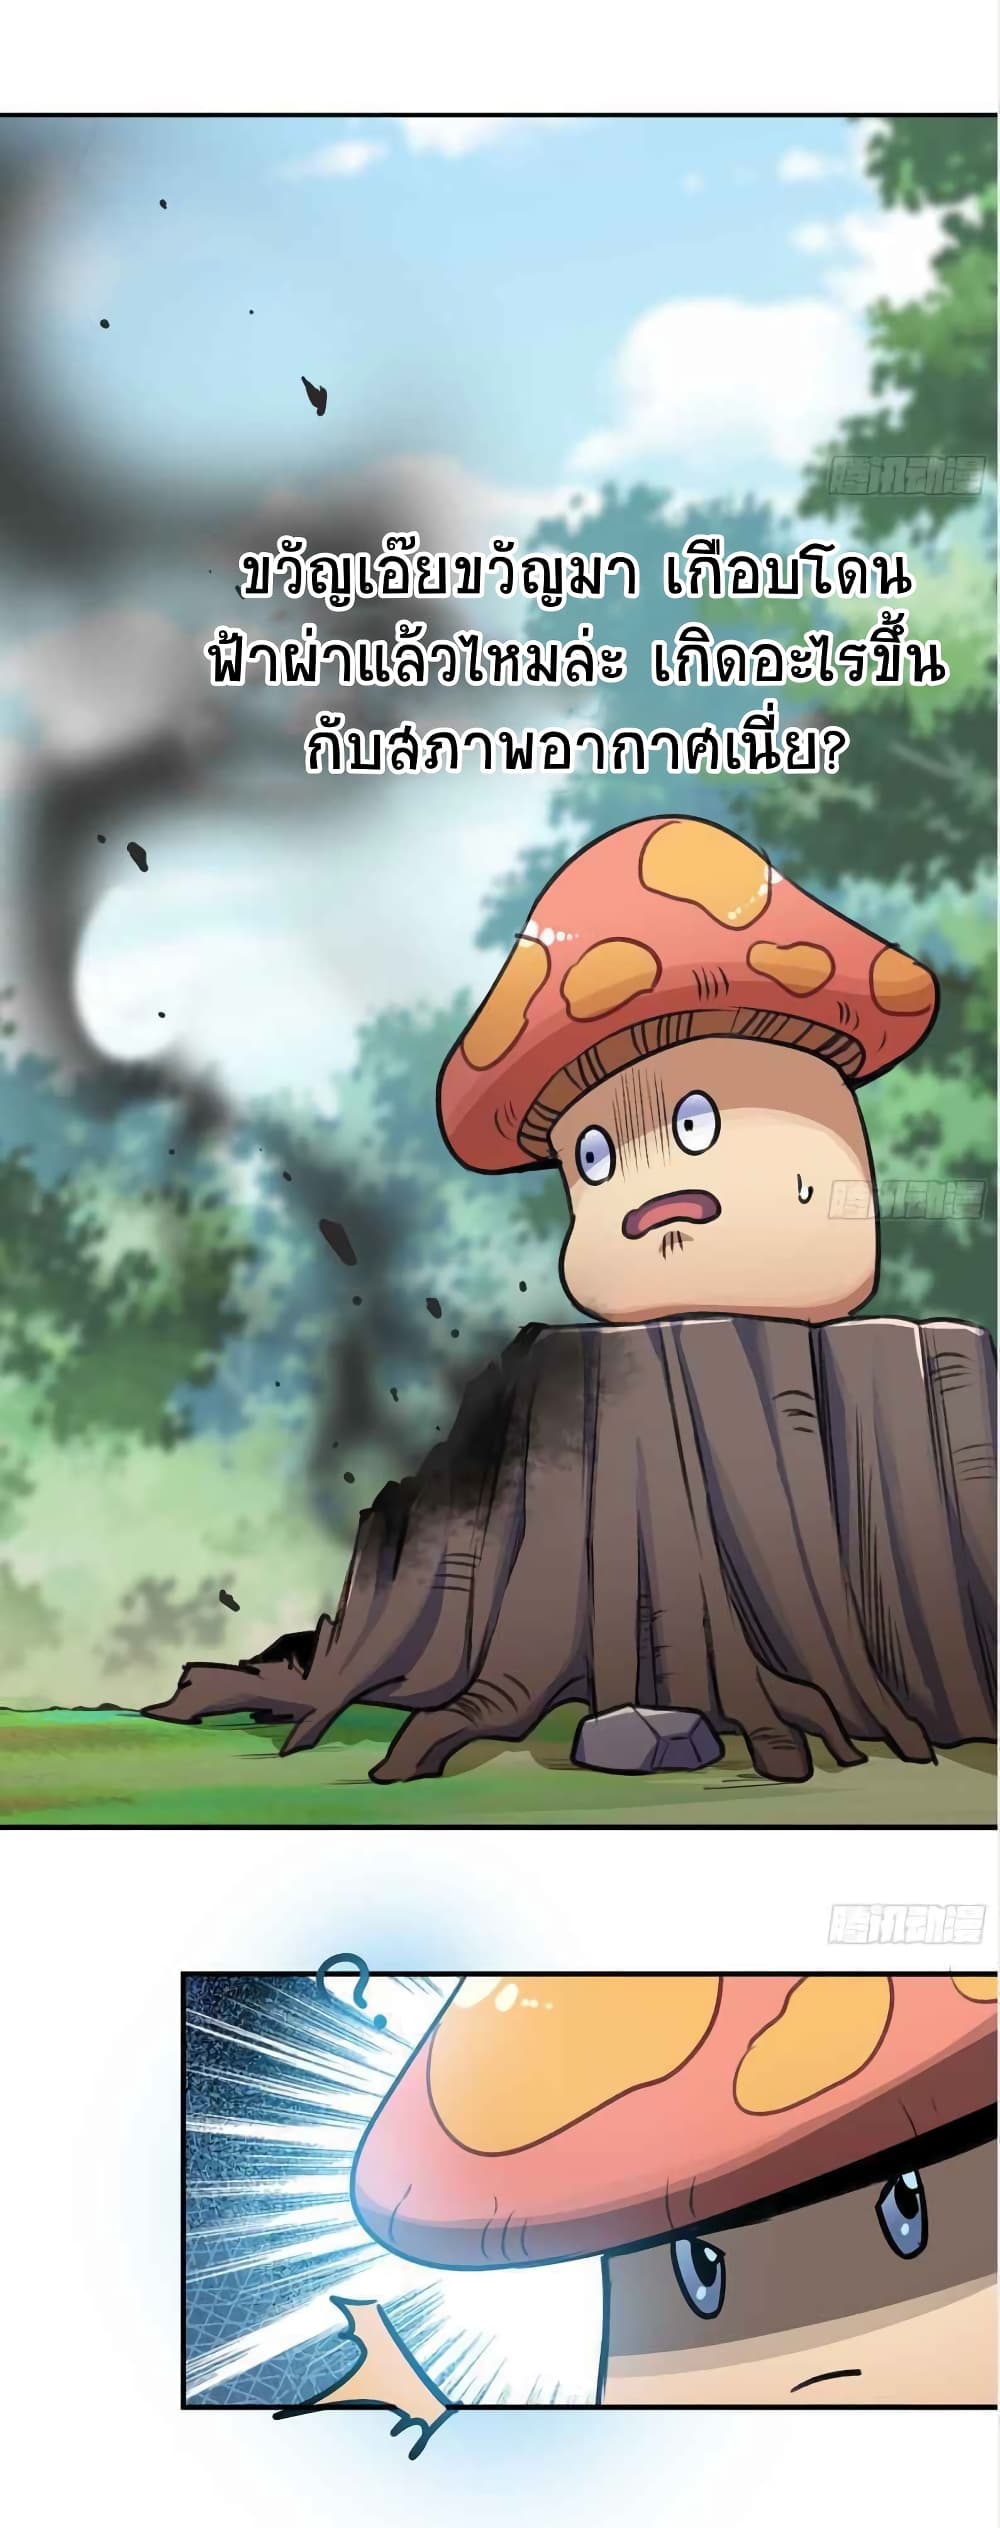 Mushroom Brave5 (31)